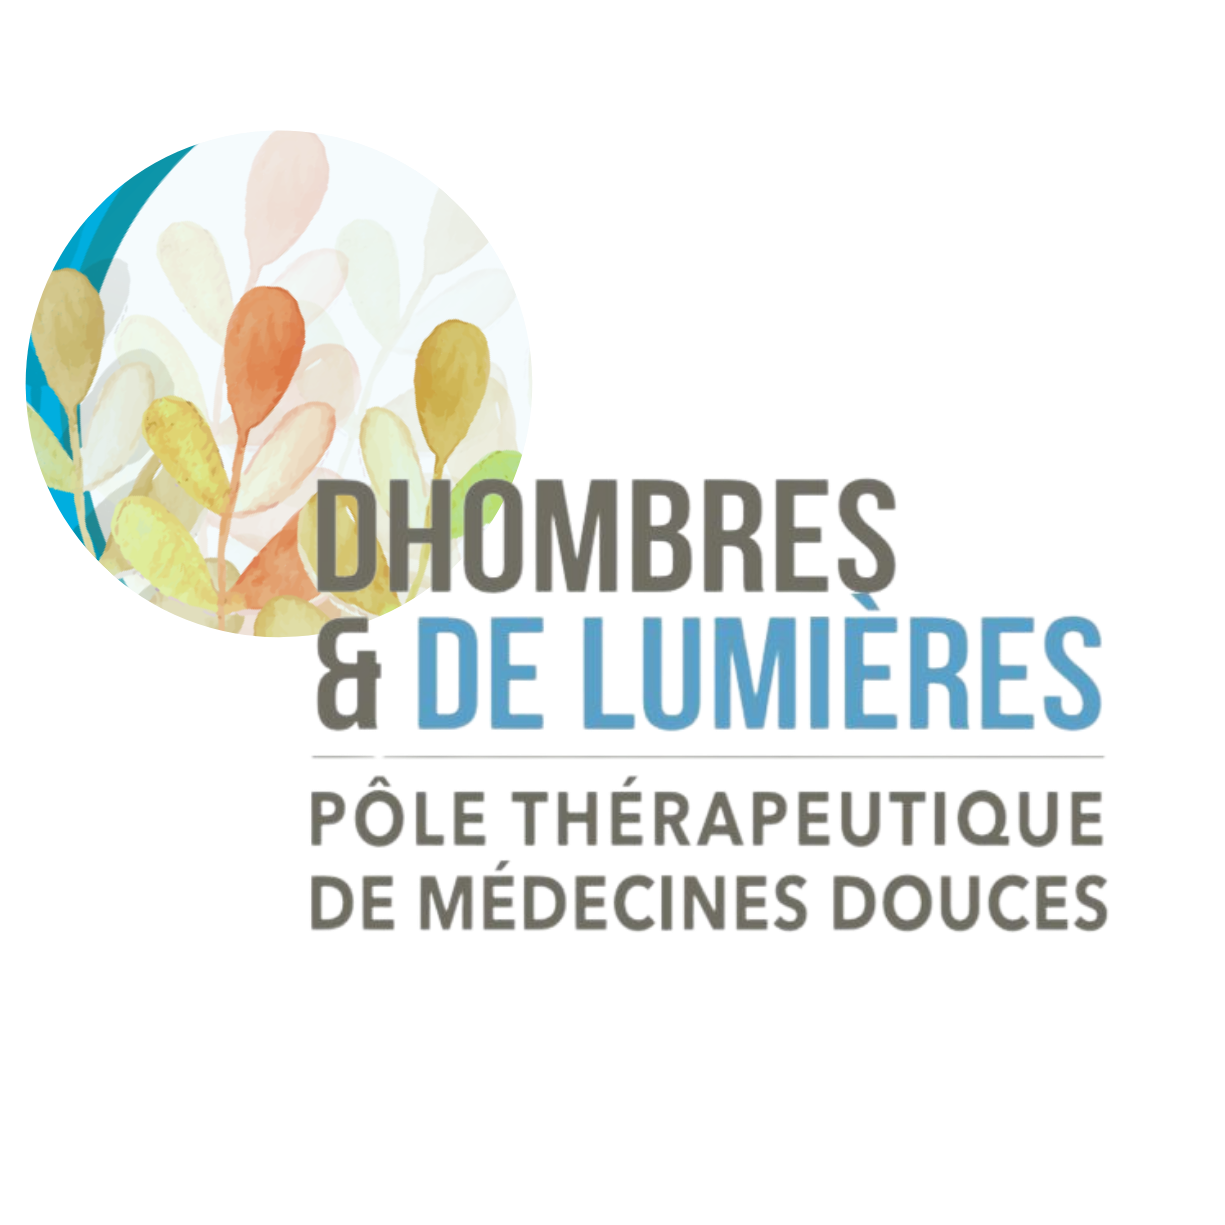 Logo du Pôle thérapeutique de médecine douces appelé DHOMBRES & DE LUMIERES